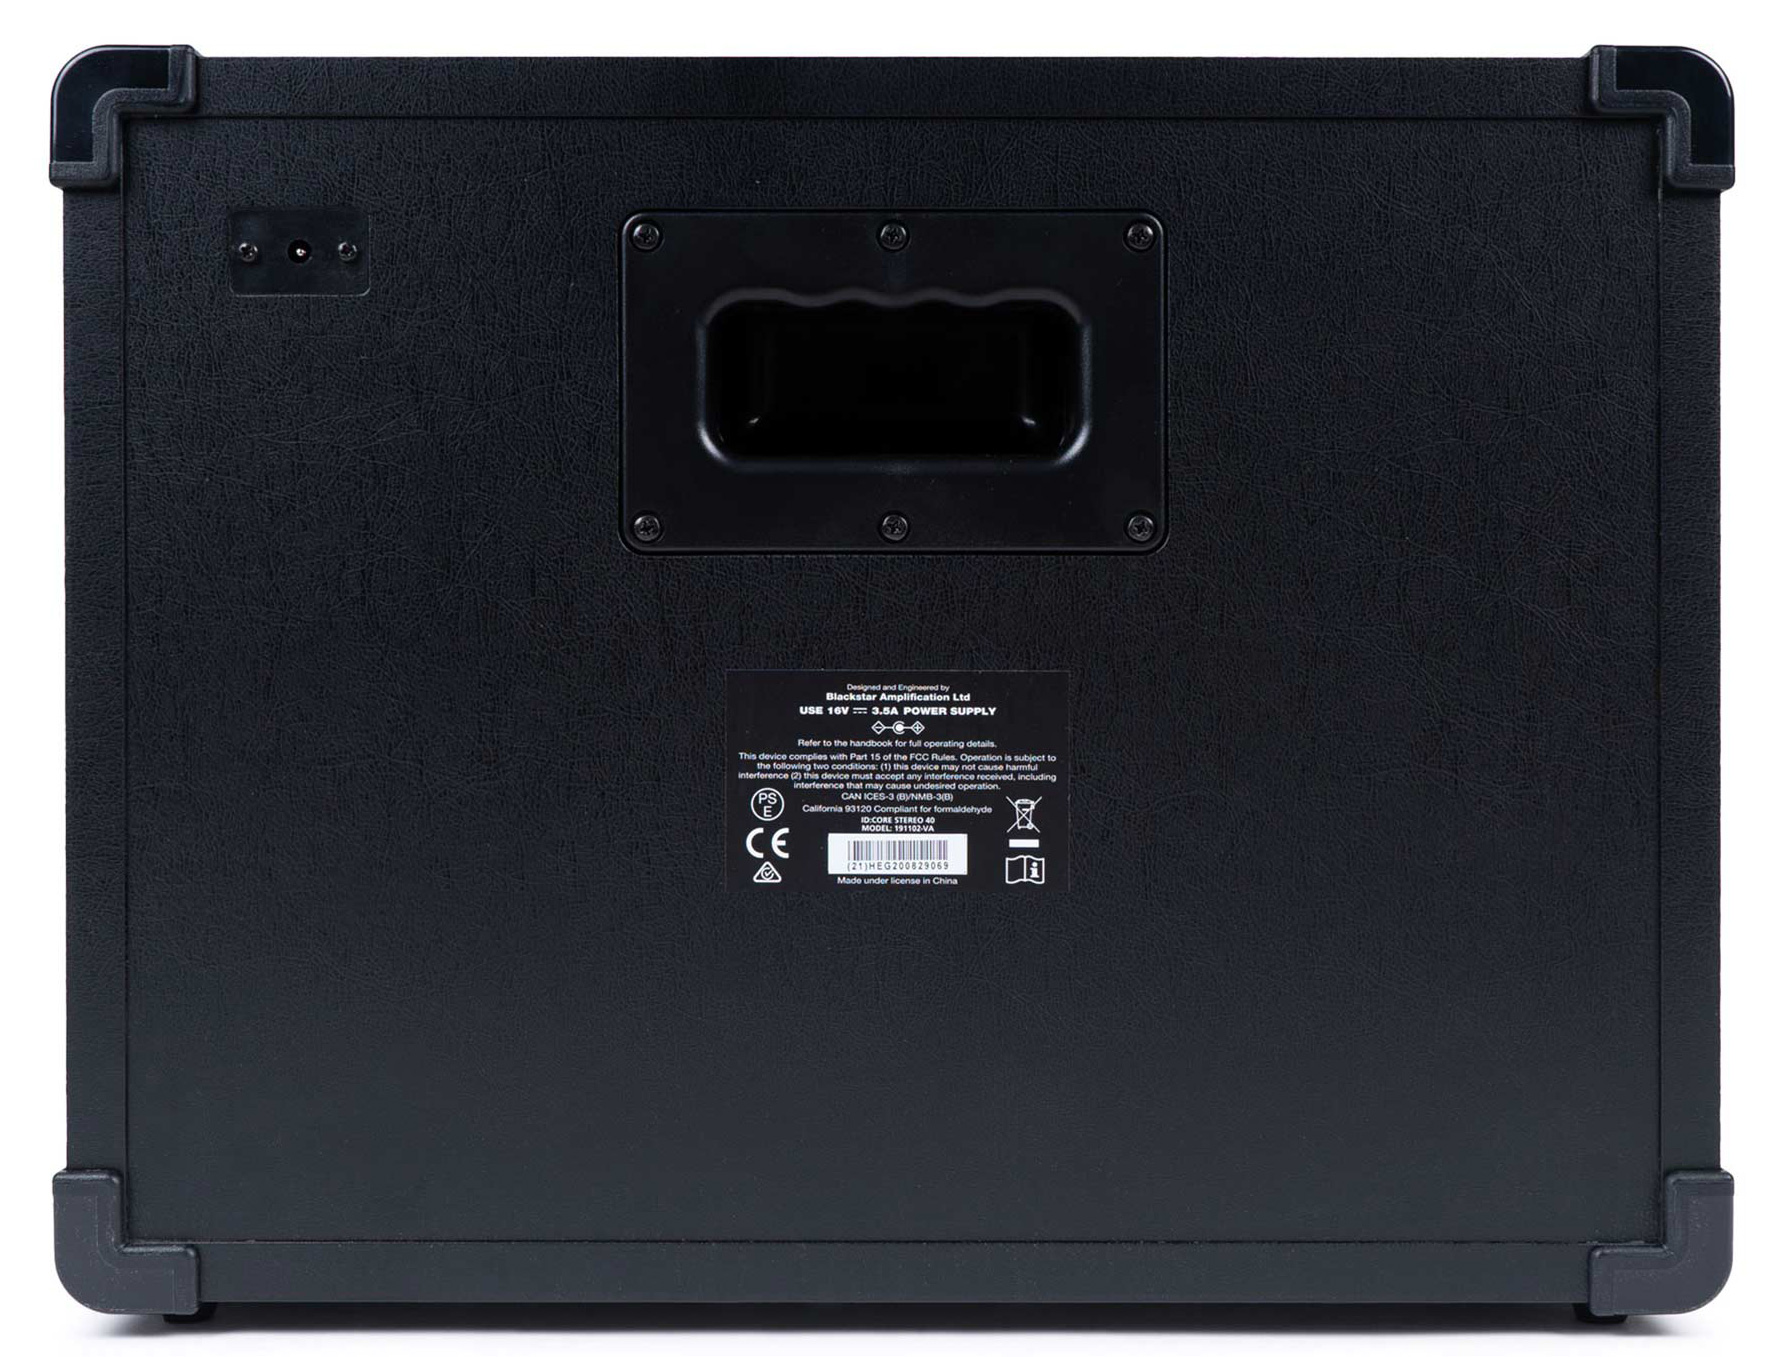 Детальная картинка товара Blackstar ID:Core40 V3 в магазине Музыкальная Тема